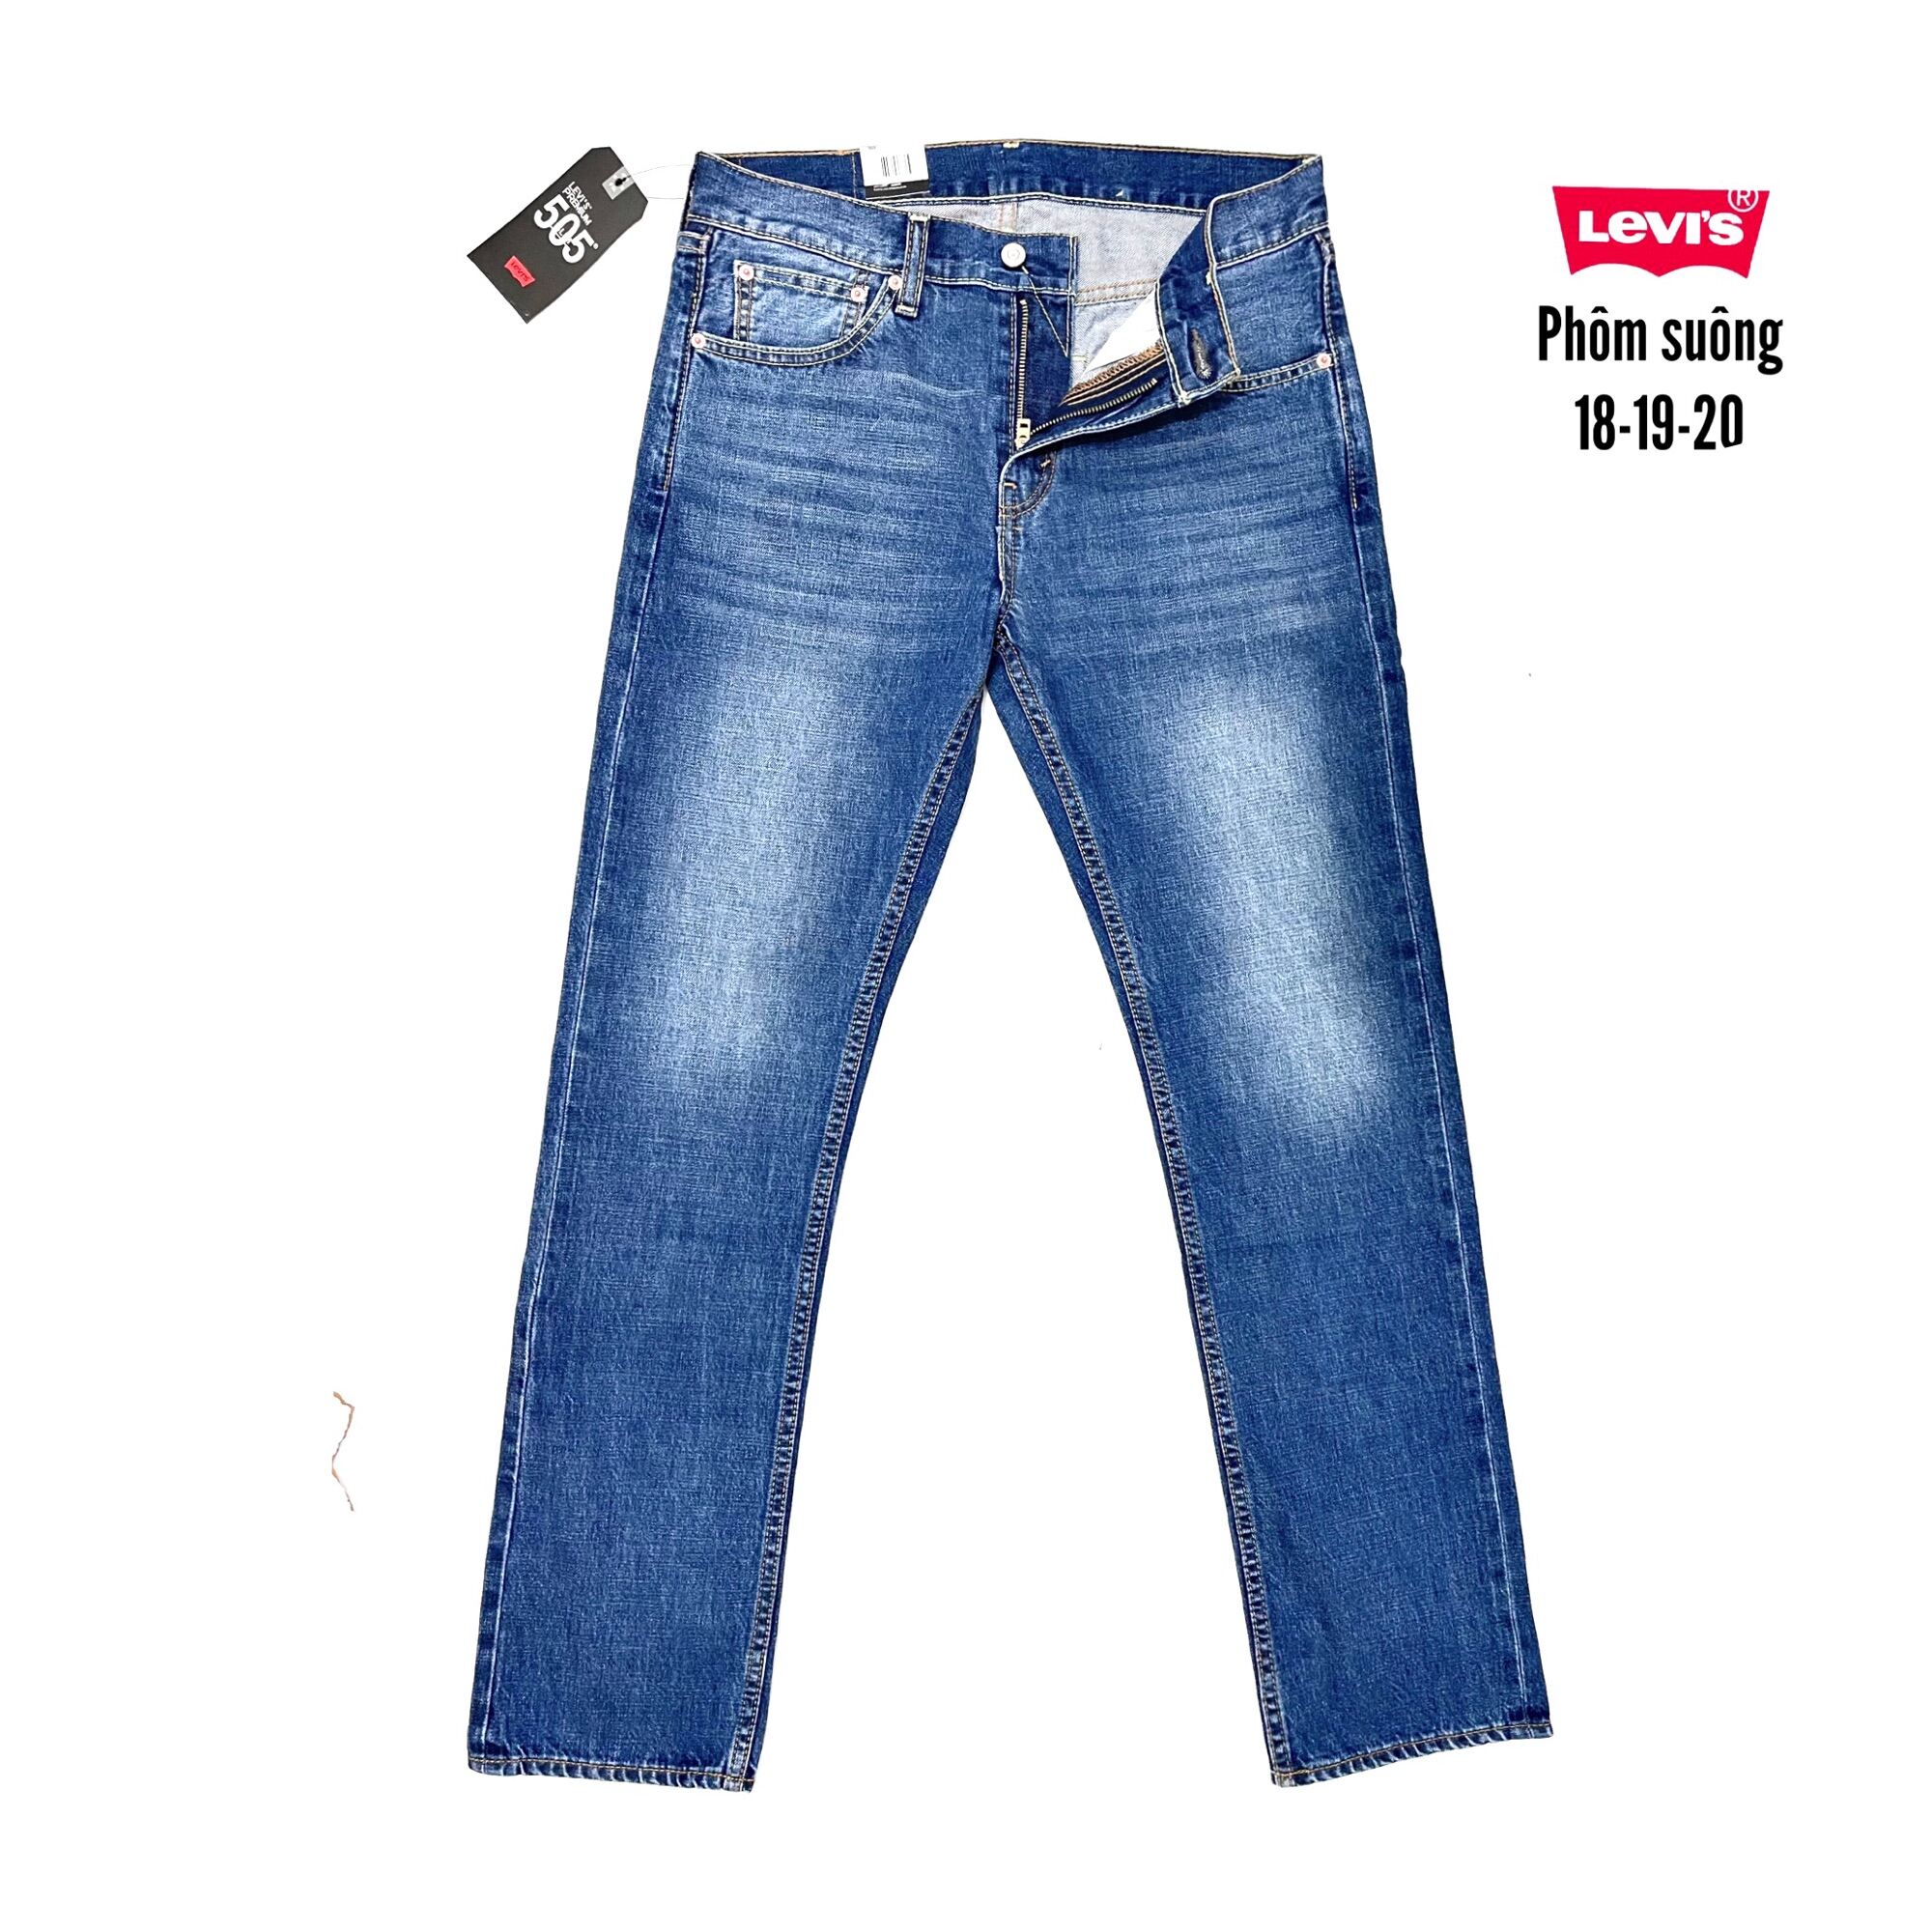 Quần jeans dài cotton nữ đáy ngắn ống đứng hiệu 511 Levi's slim fit màu mận  size 10-12-14 chính hãng - Đồ Hiệu Mỹ - Hàng xách tay Mỹ